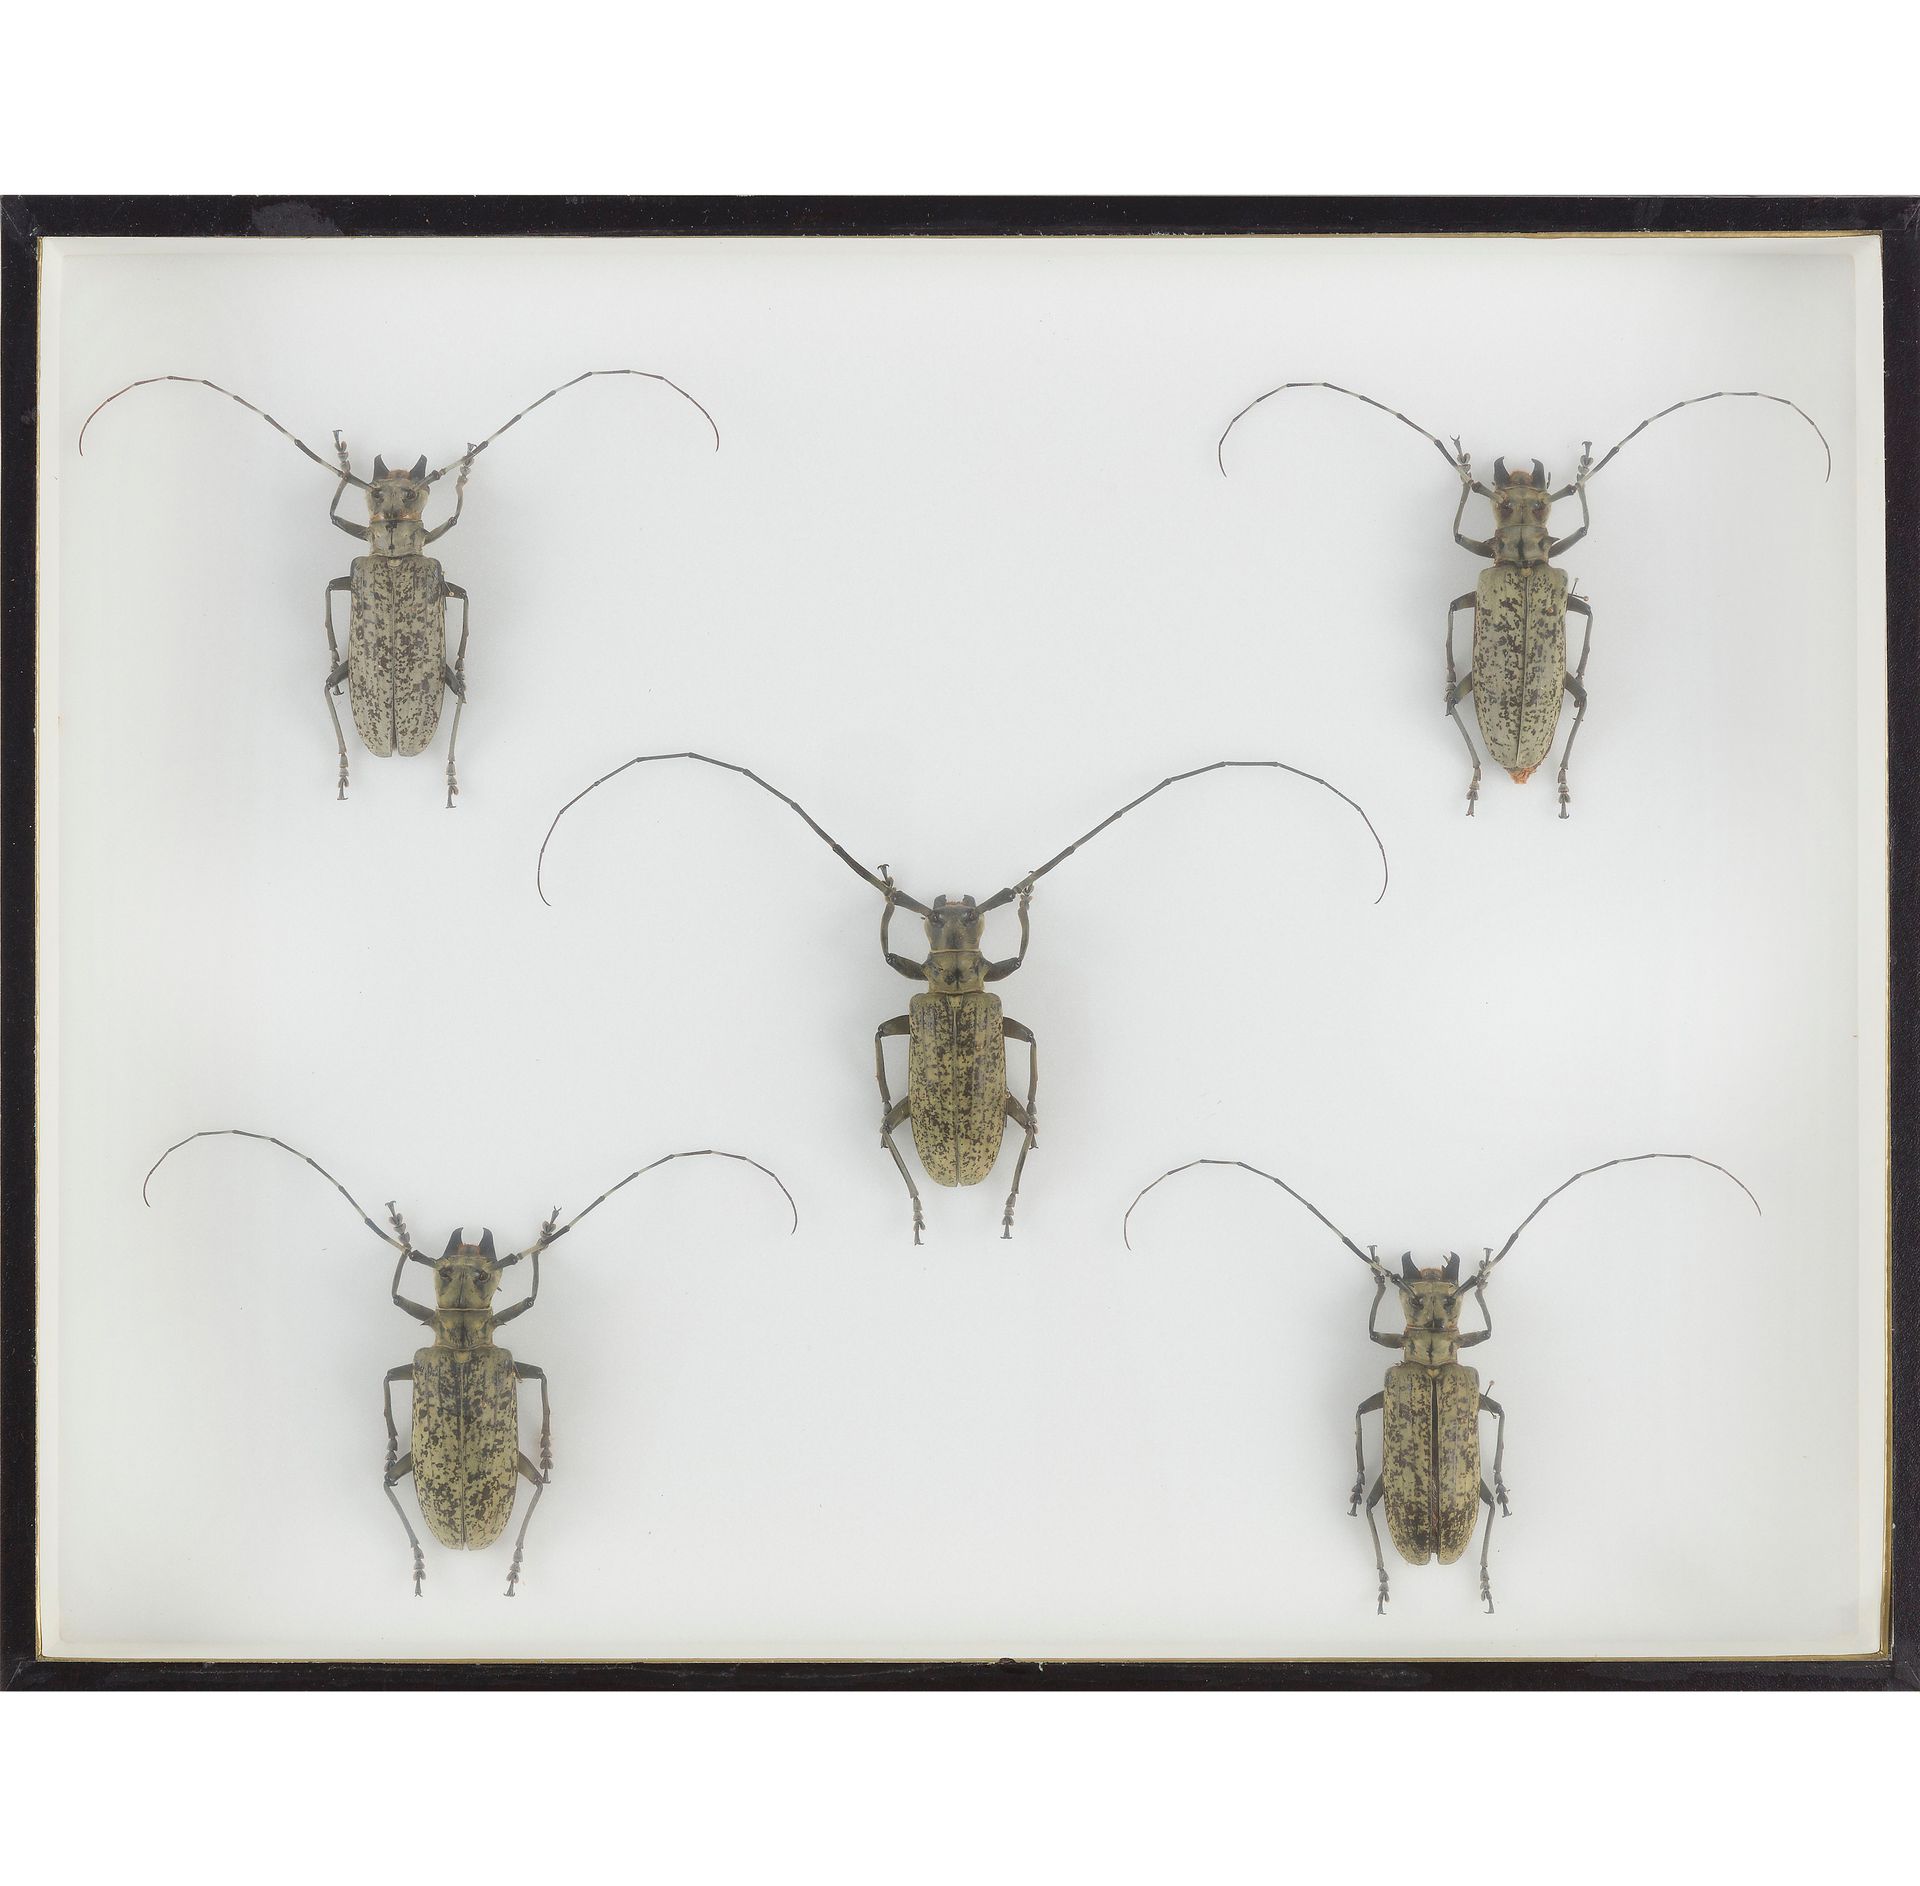 Null Un juego de dos cajas para insectos compuesto por :

Phasmidae (6 machos, 5&hellip;